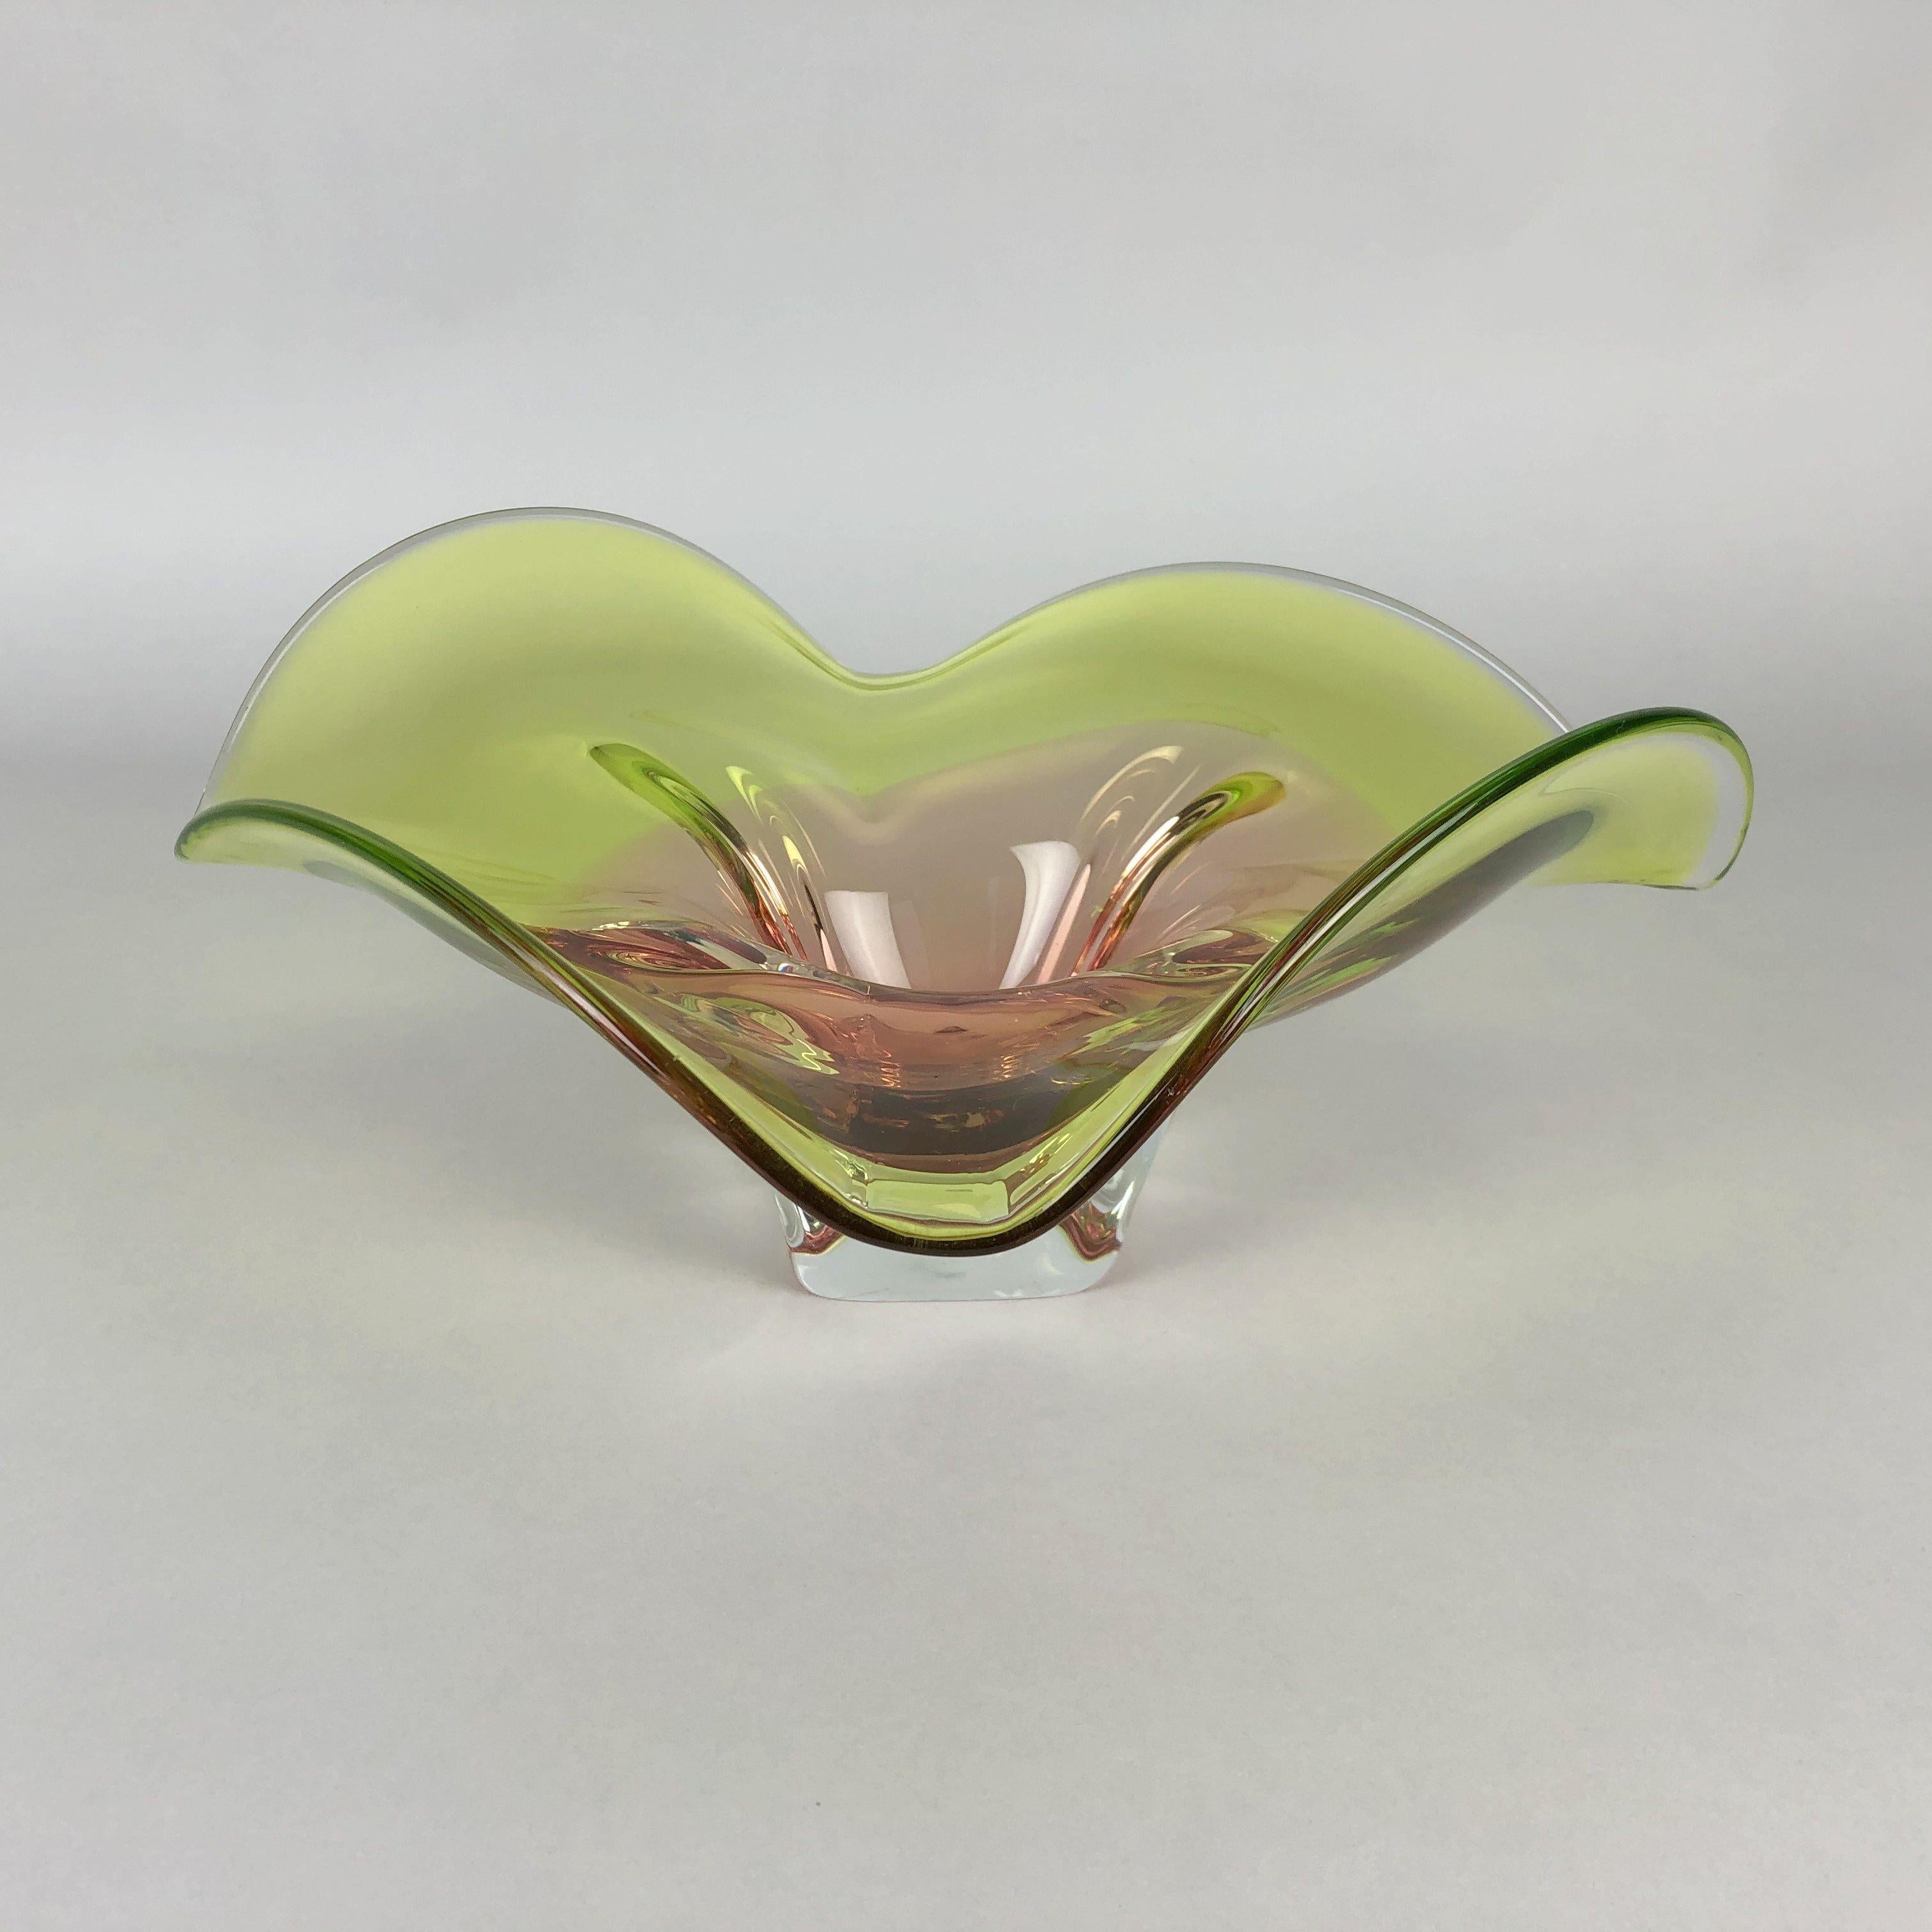 Vintage Art Glass Bowl by Chribska Glasswork, 1960s For Sale 1